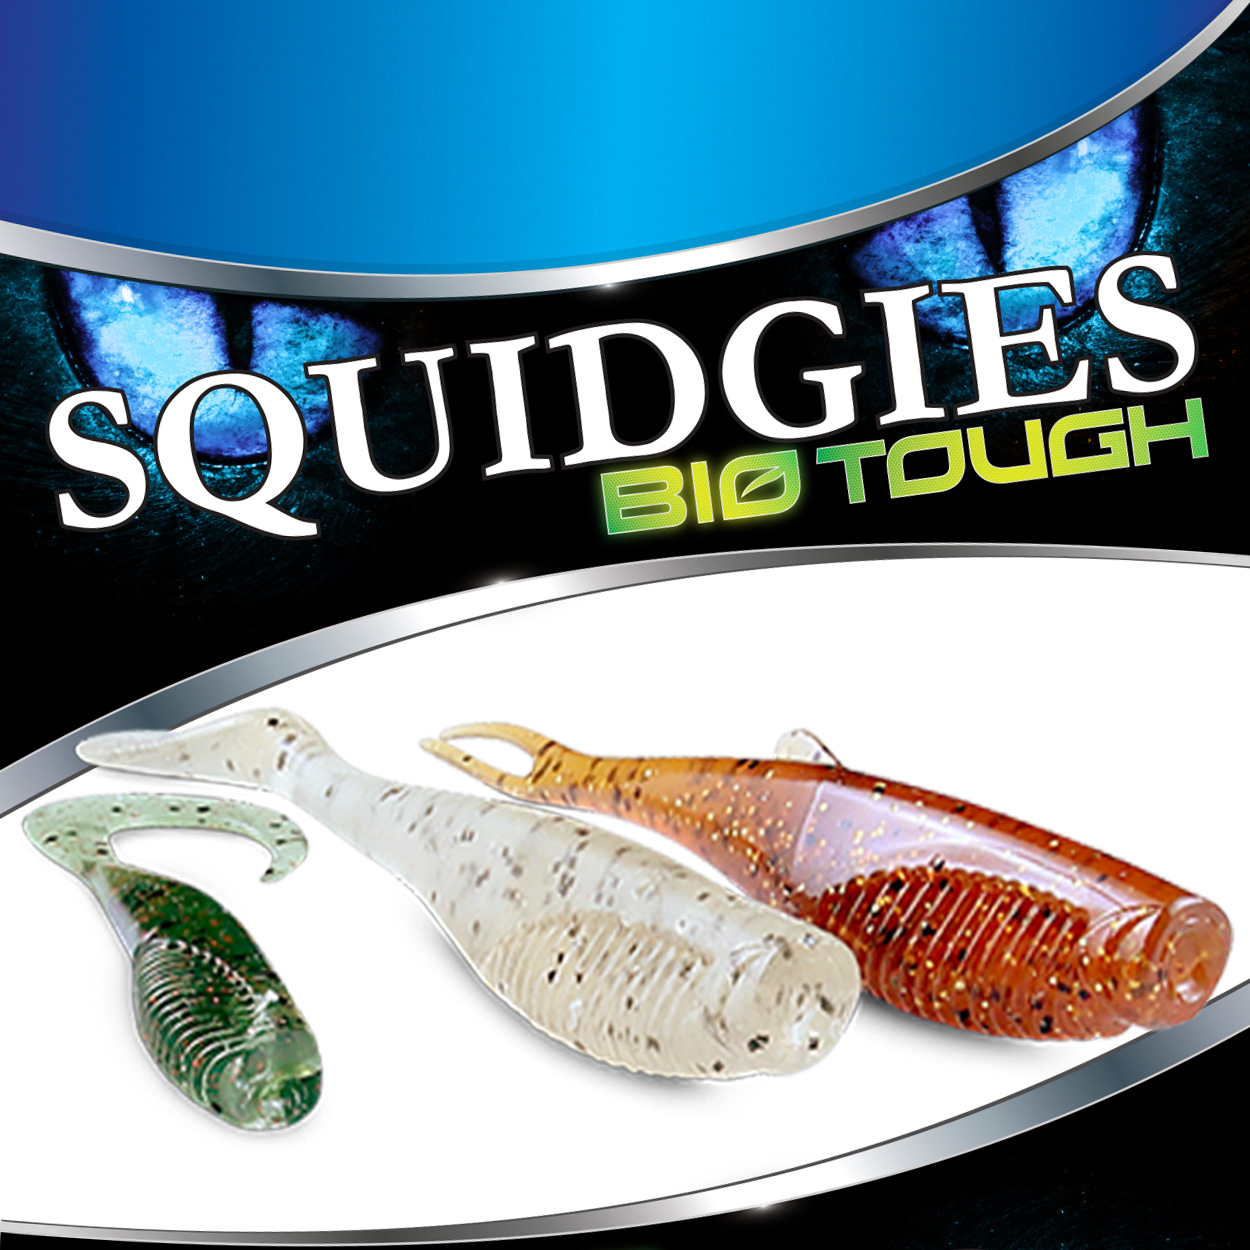 squidgies bio tough